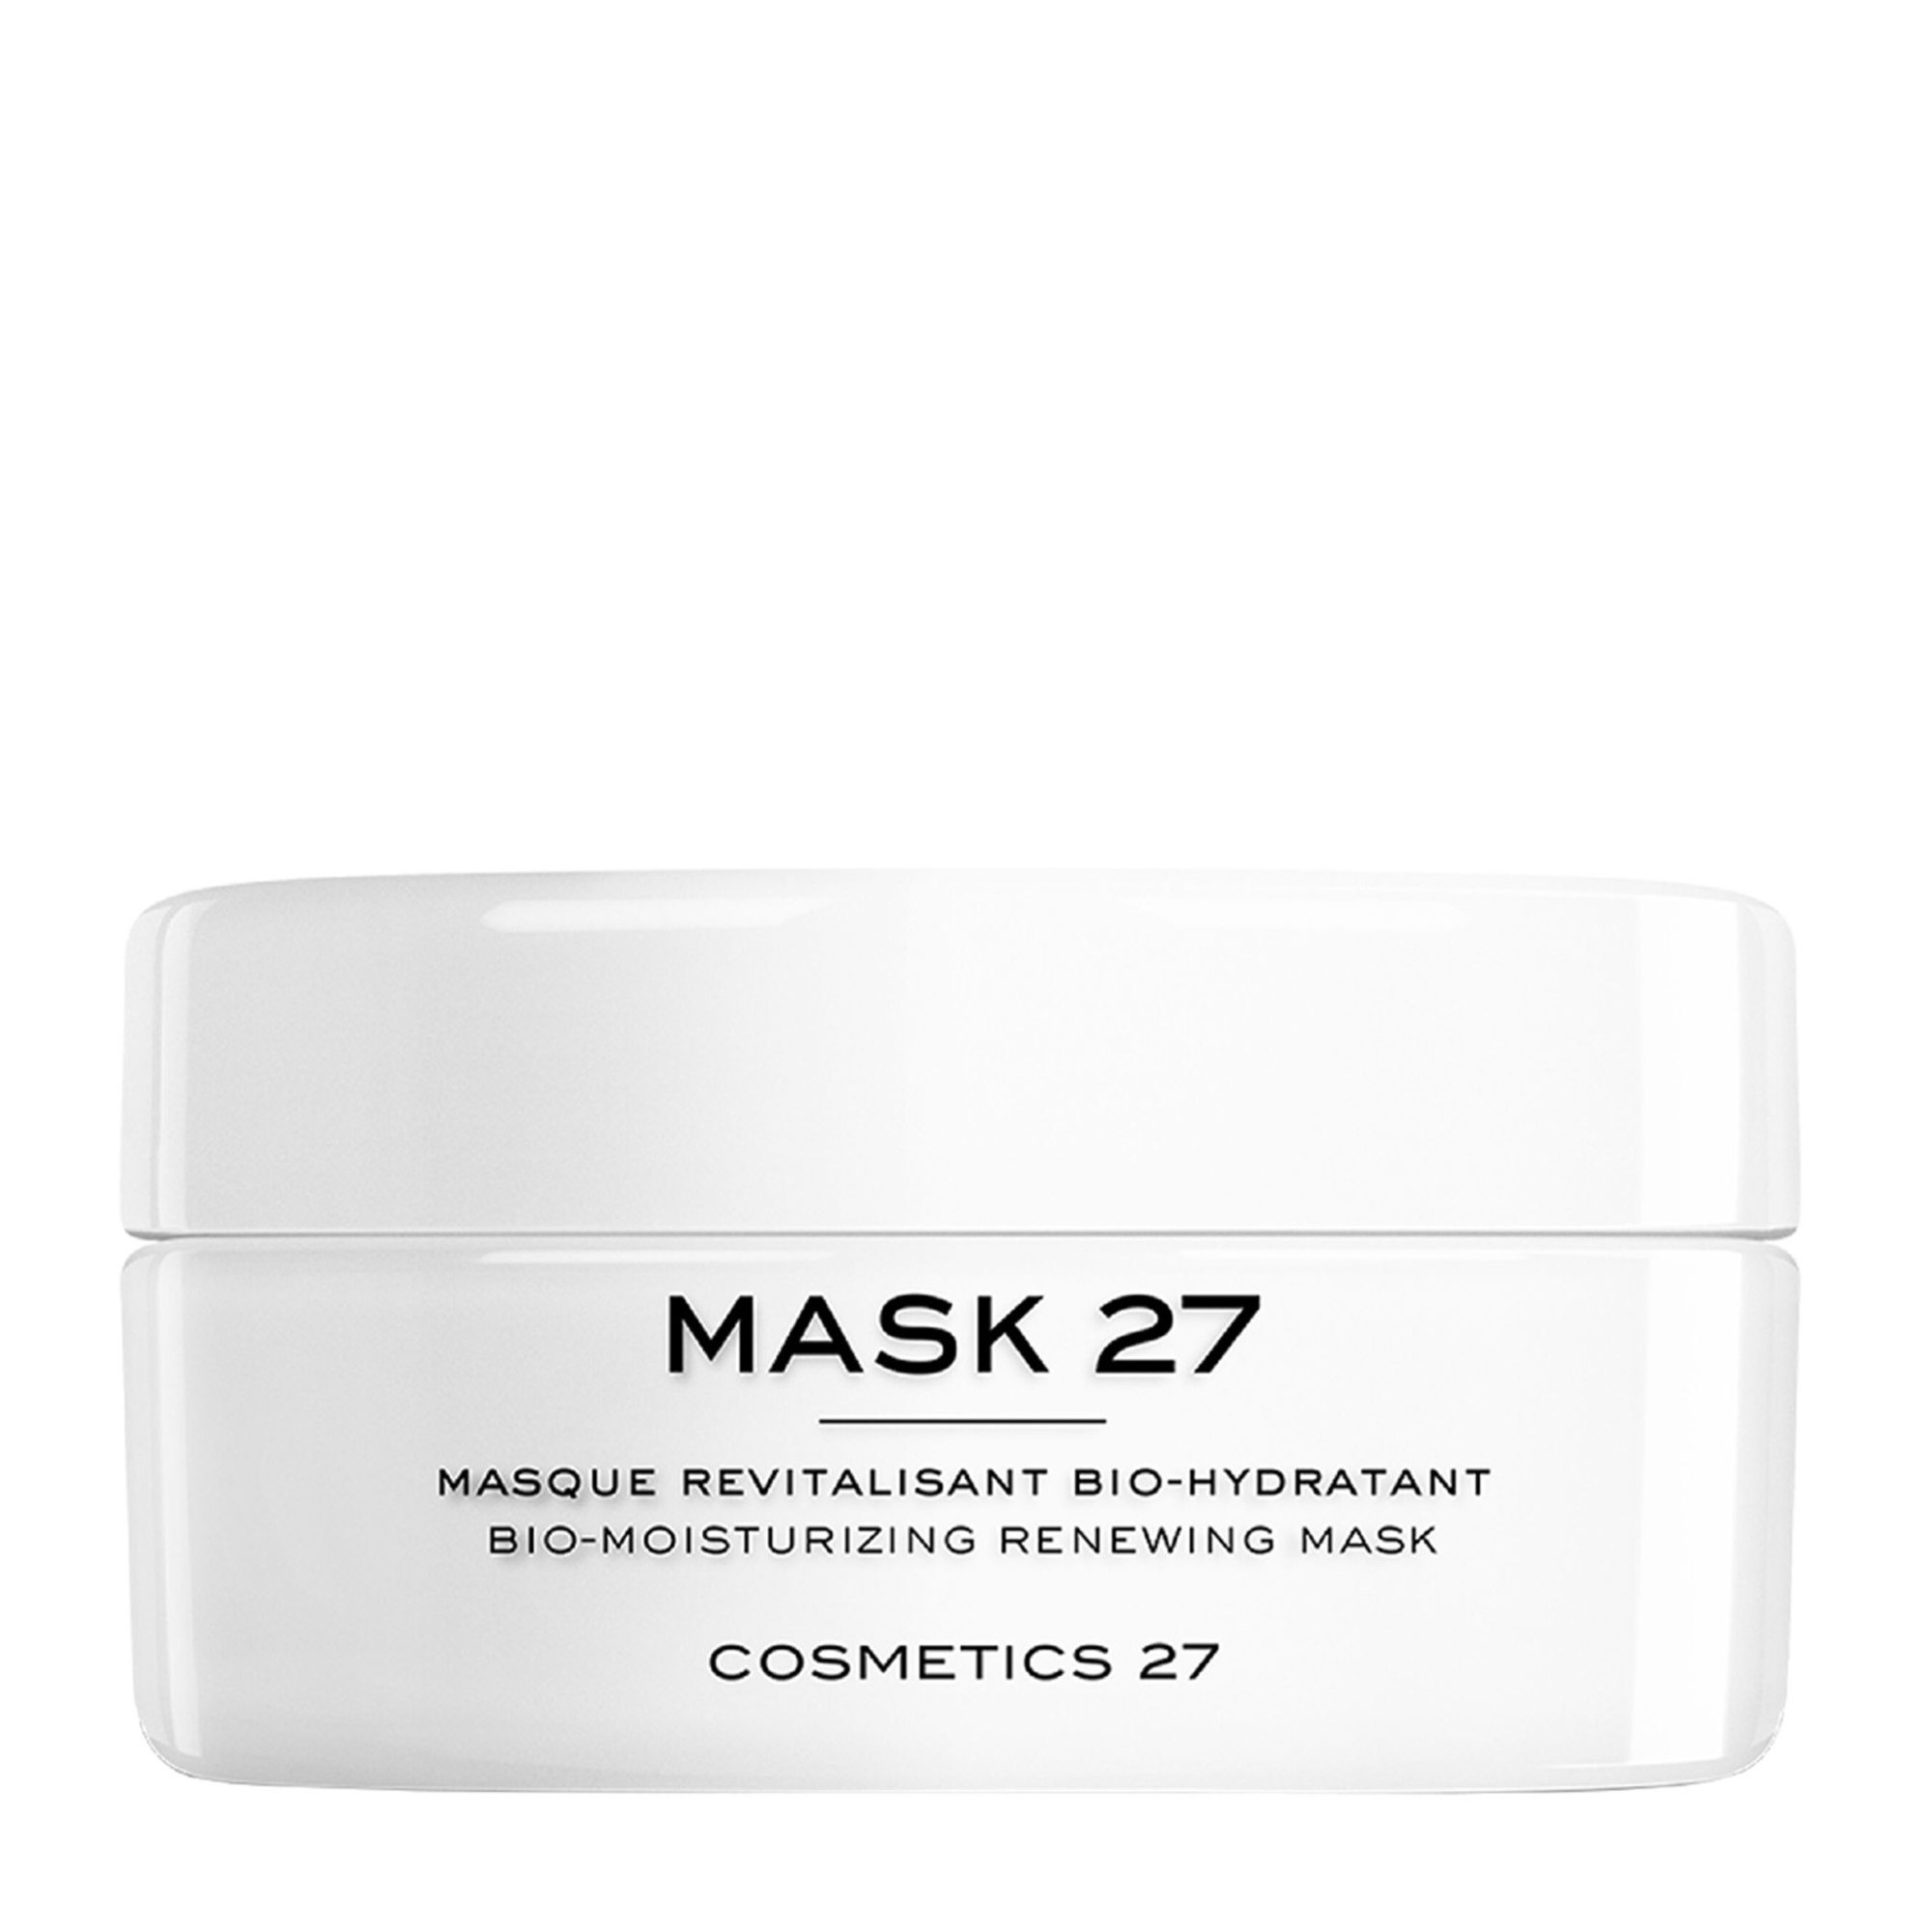 Cosmetics 27 Mask 27 - Увлажняющая восстанавливающая биомаска